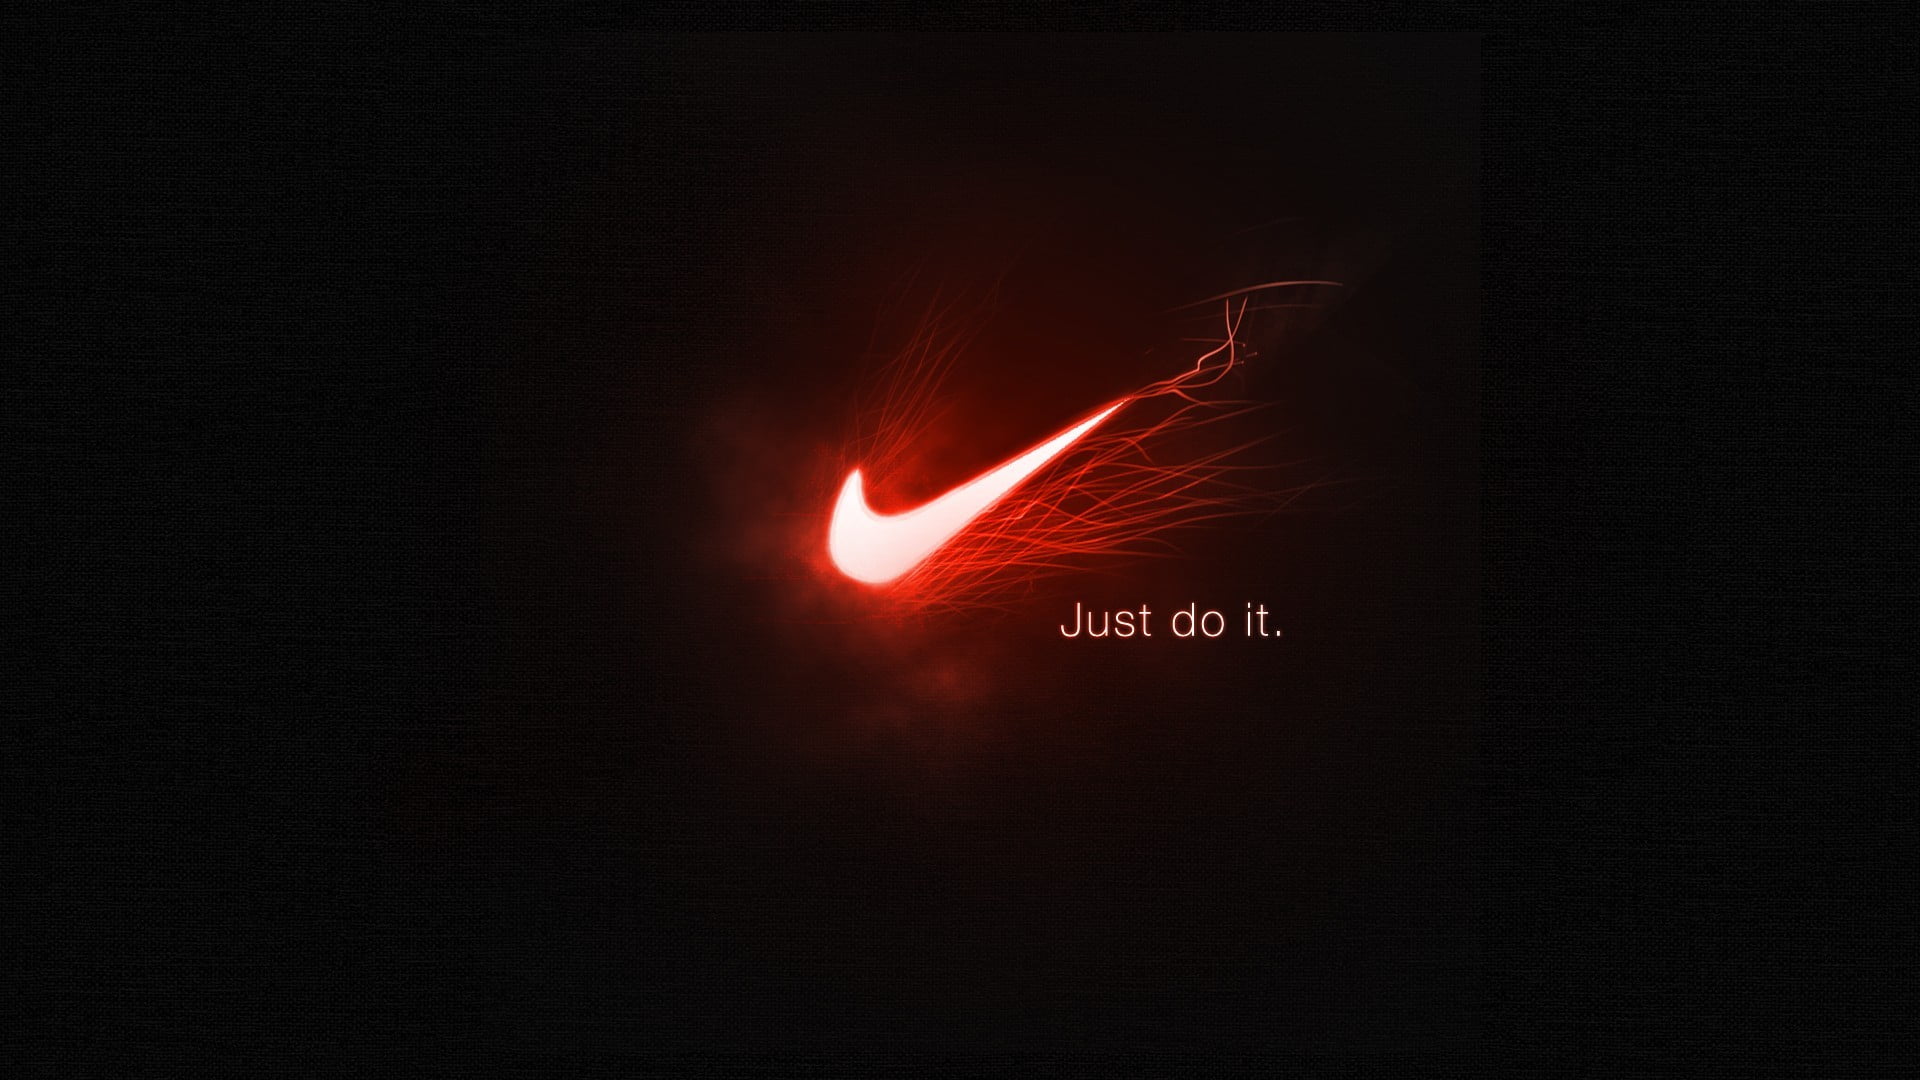 100以上 壁紙 Nike Sb ロゴ 最高の画像新しい壁紙ehd